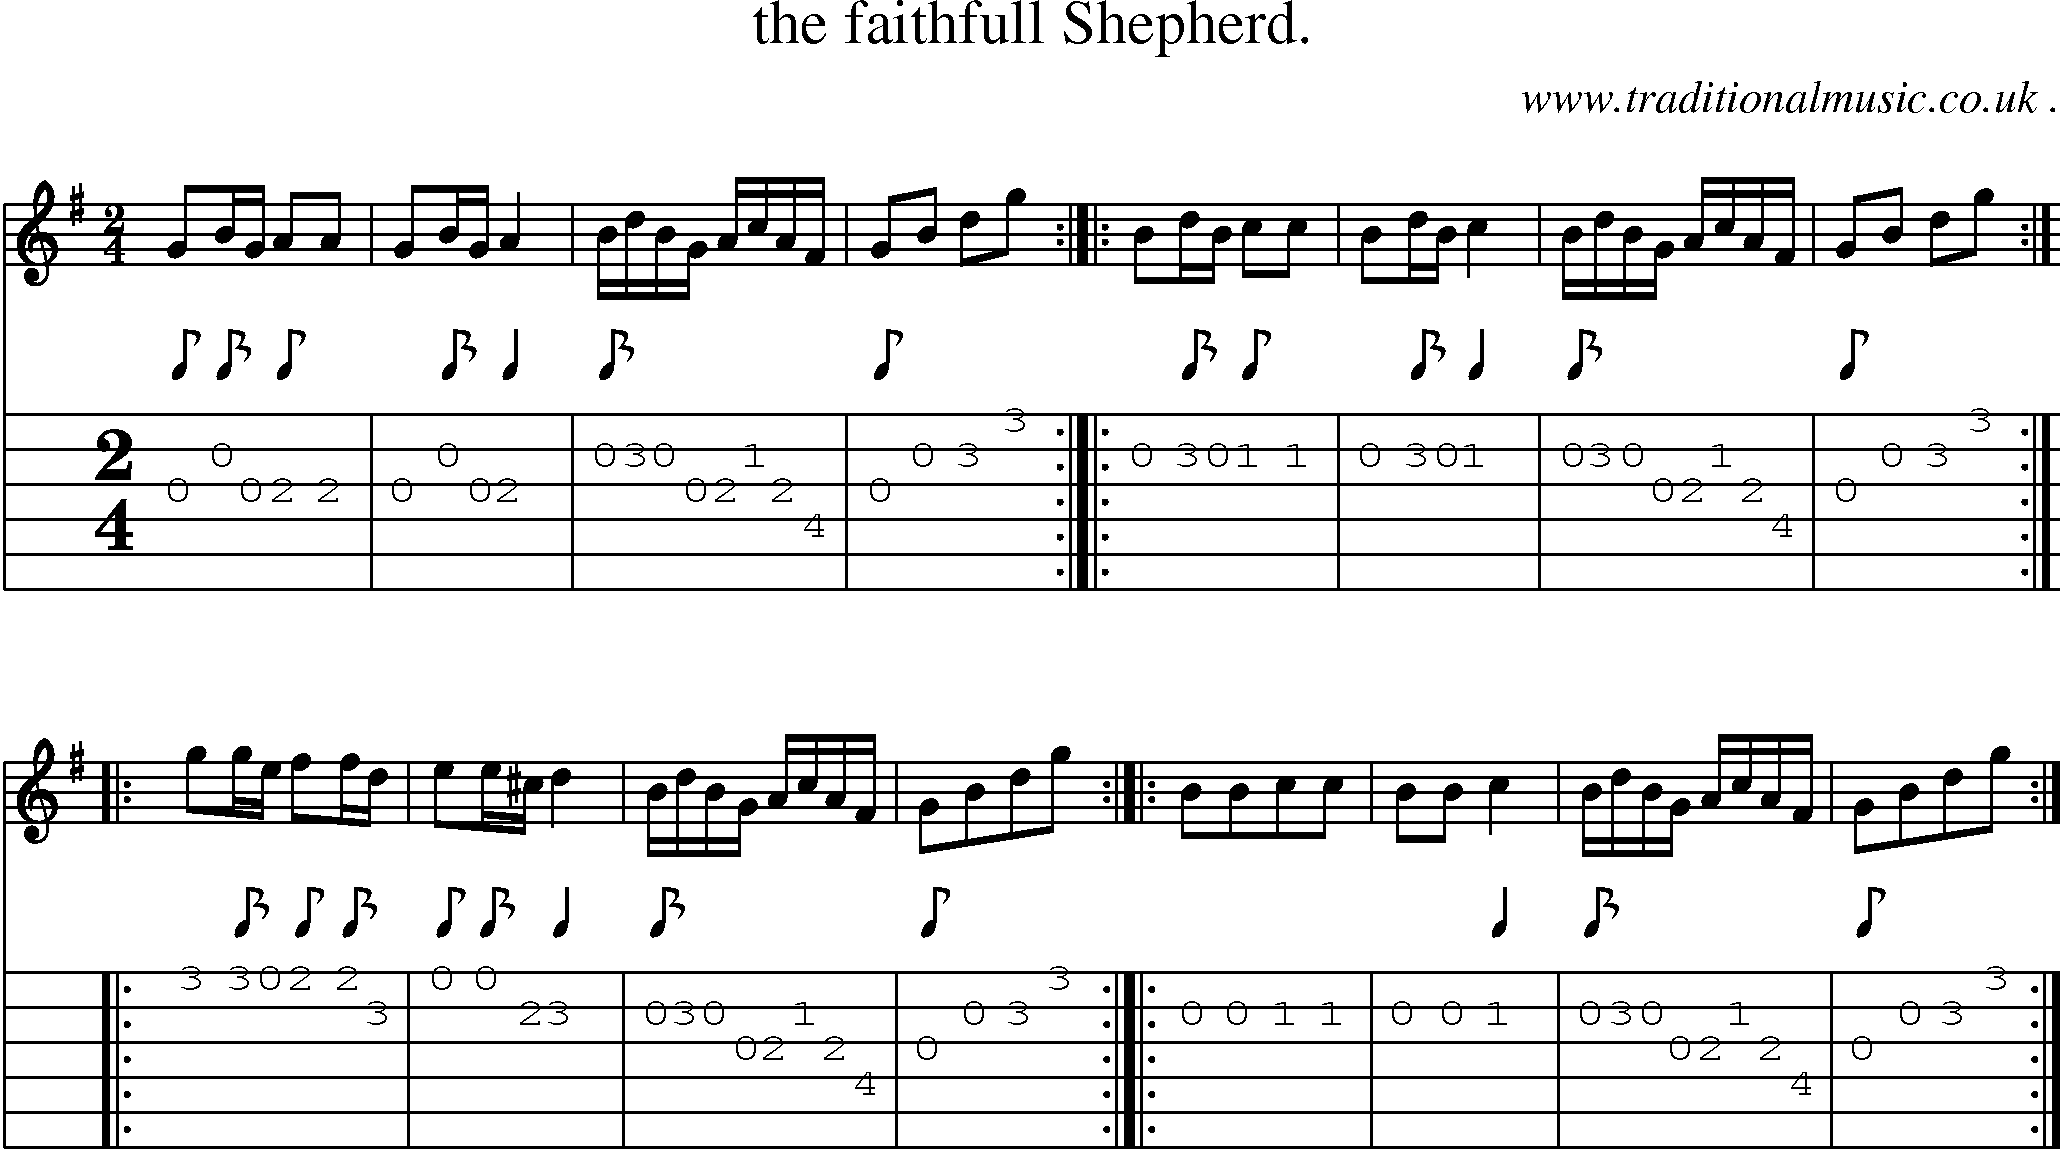 Sheet-Music and Guitar Tabs for The Faithfull Shepherd